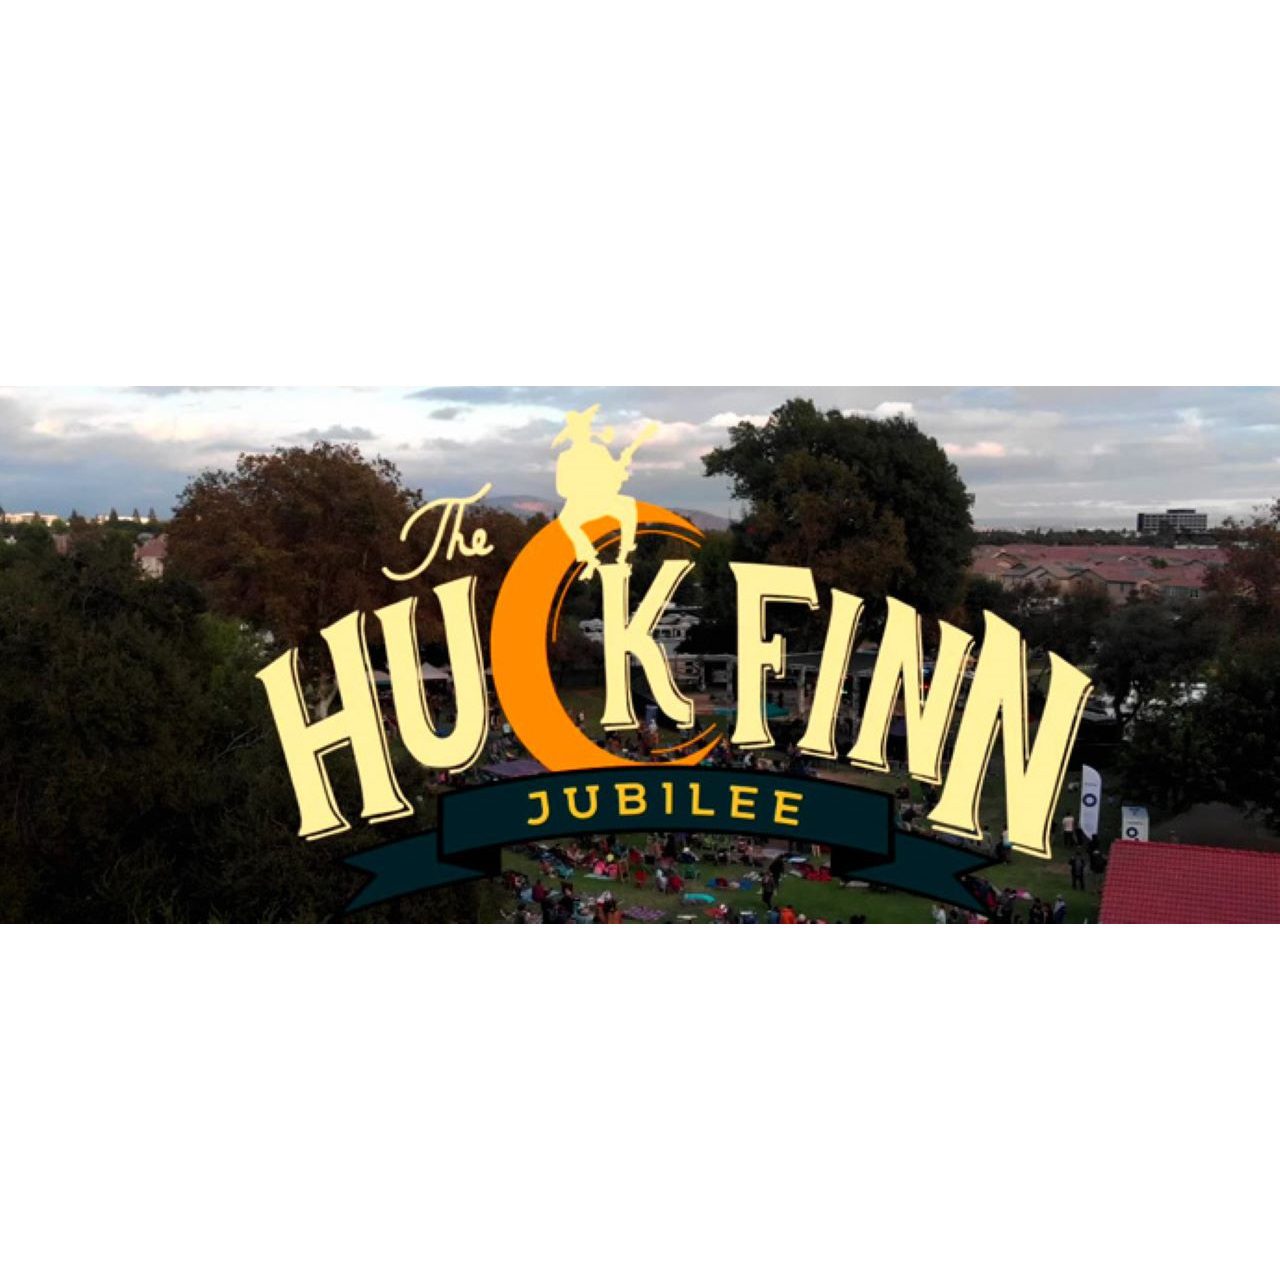 THE HUCK FINN JUBILEE logo